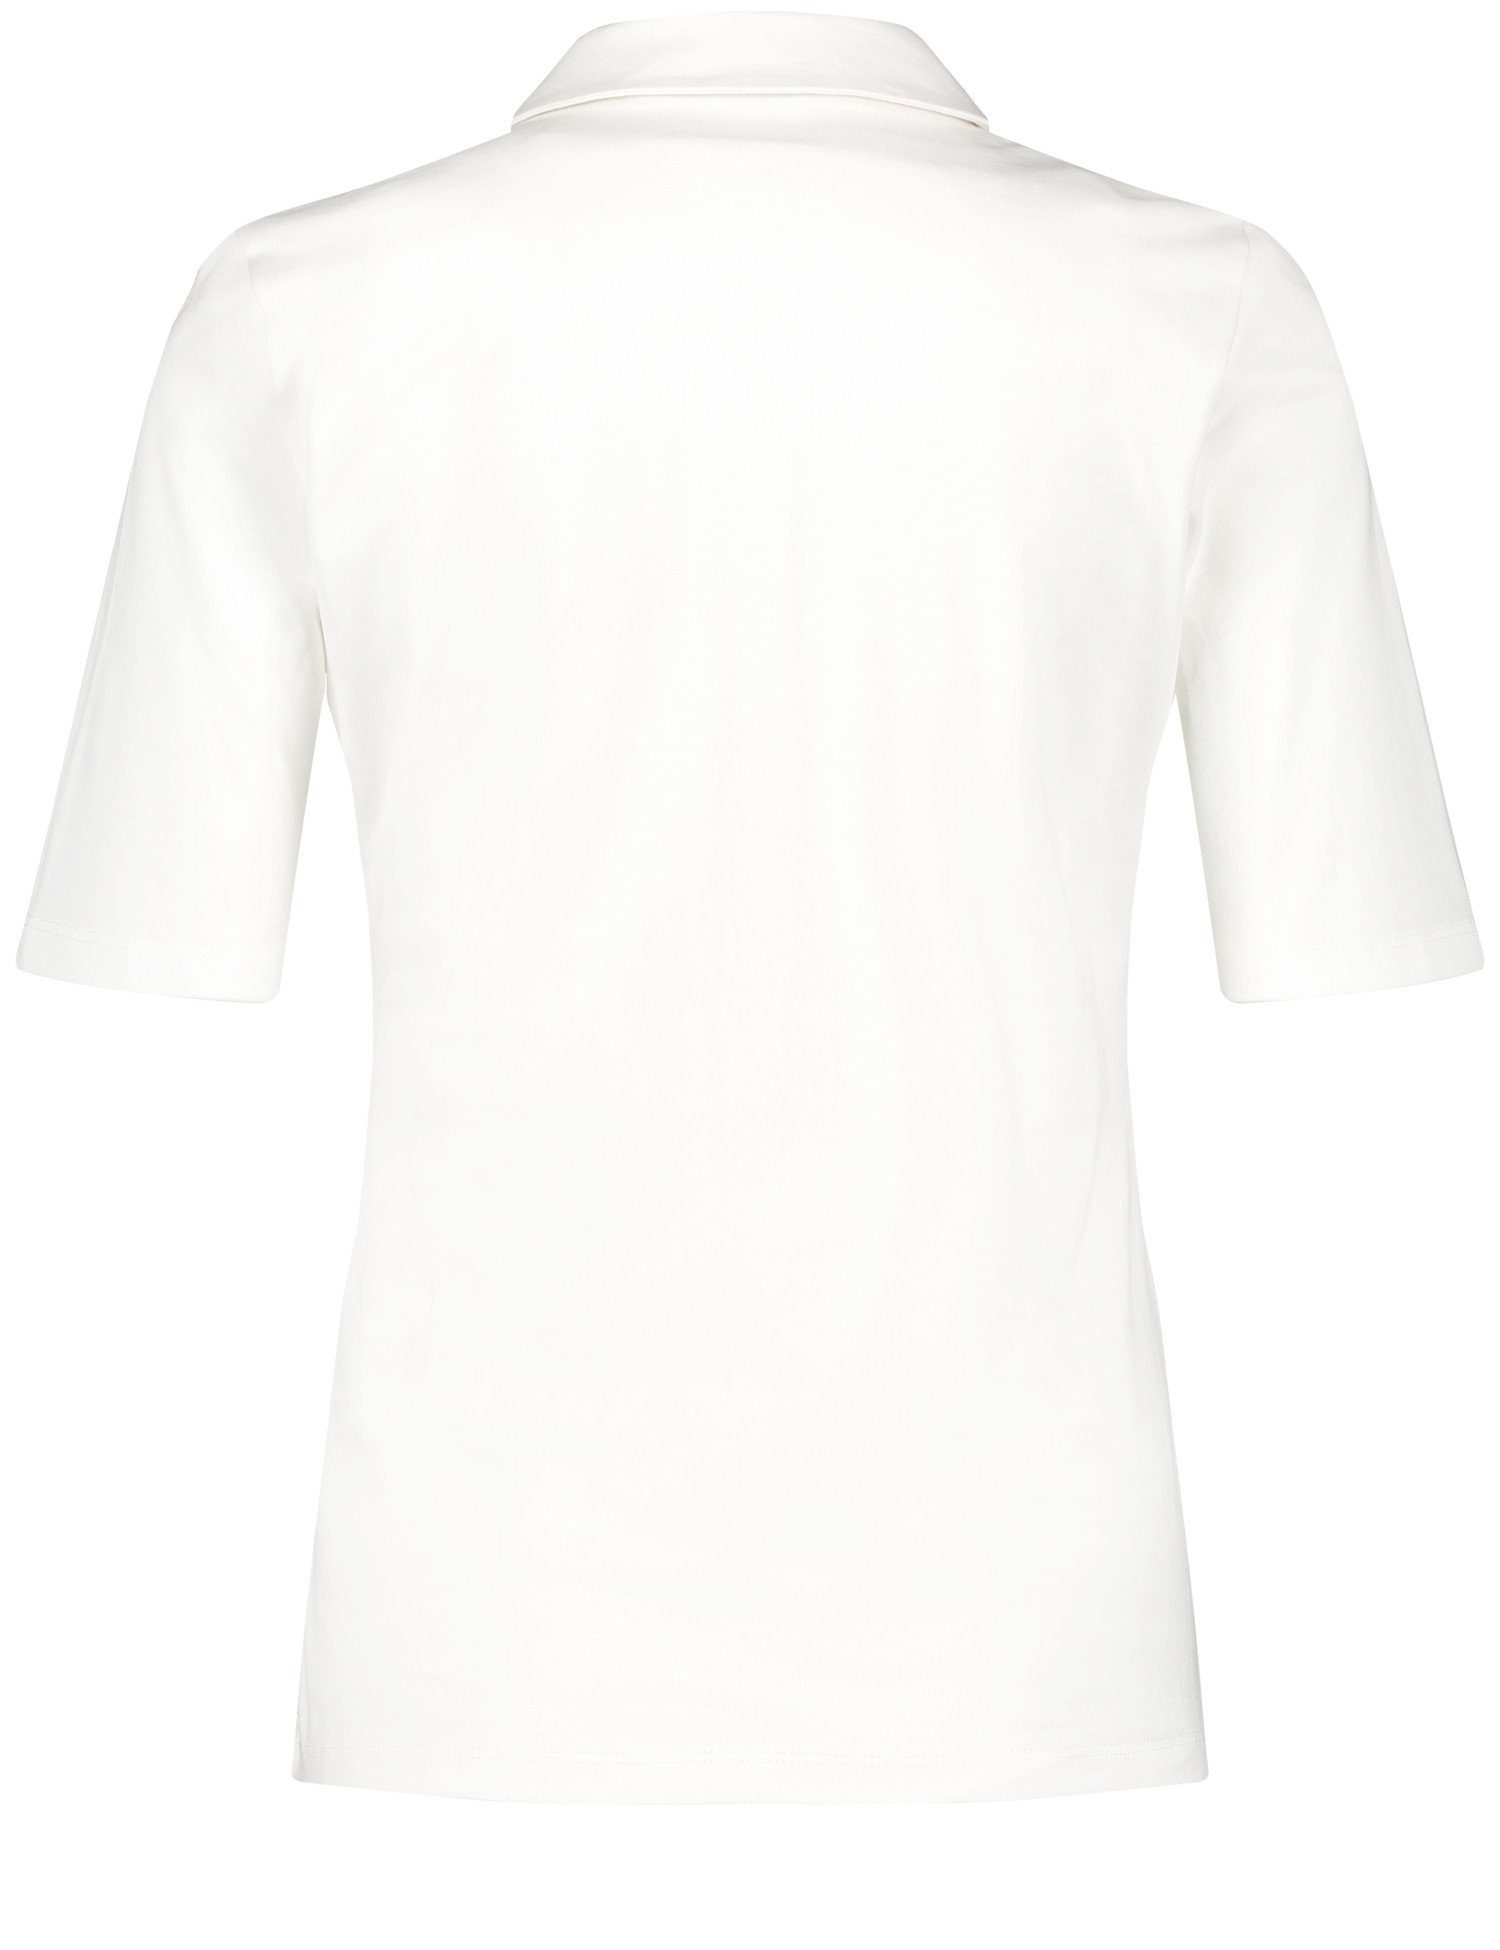 GERRY WEBER Poloshirt Poloshirt aus Baumwolle Off-white